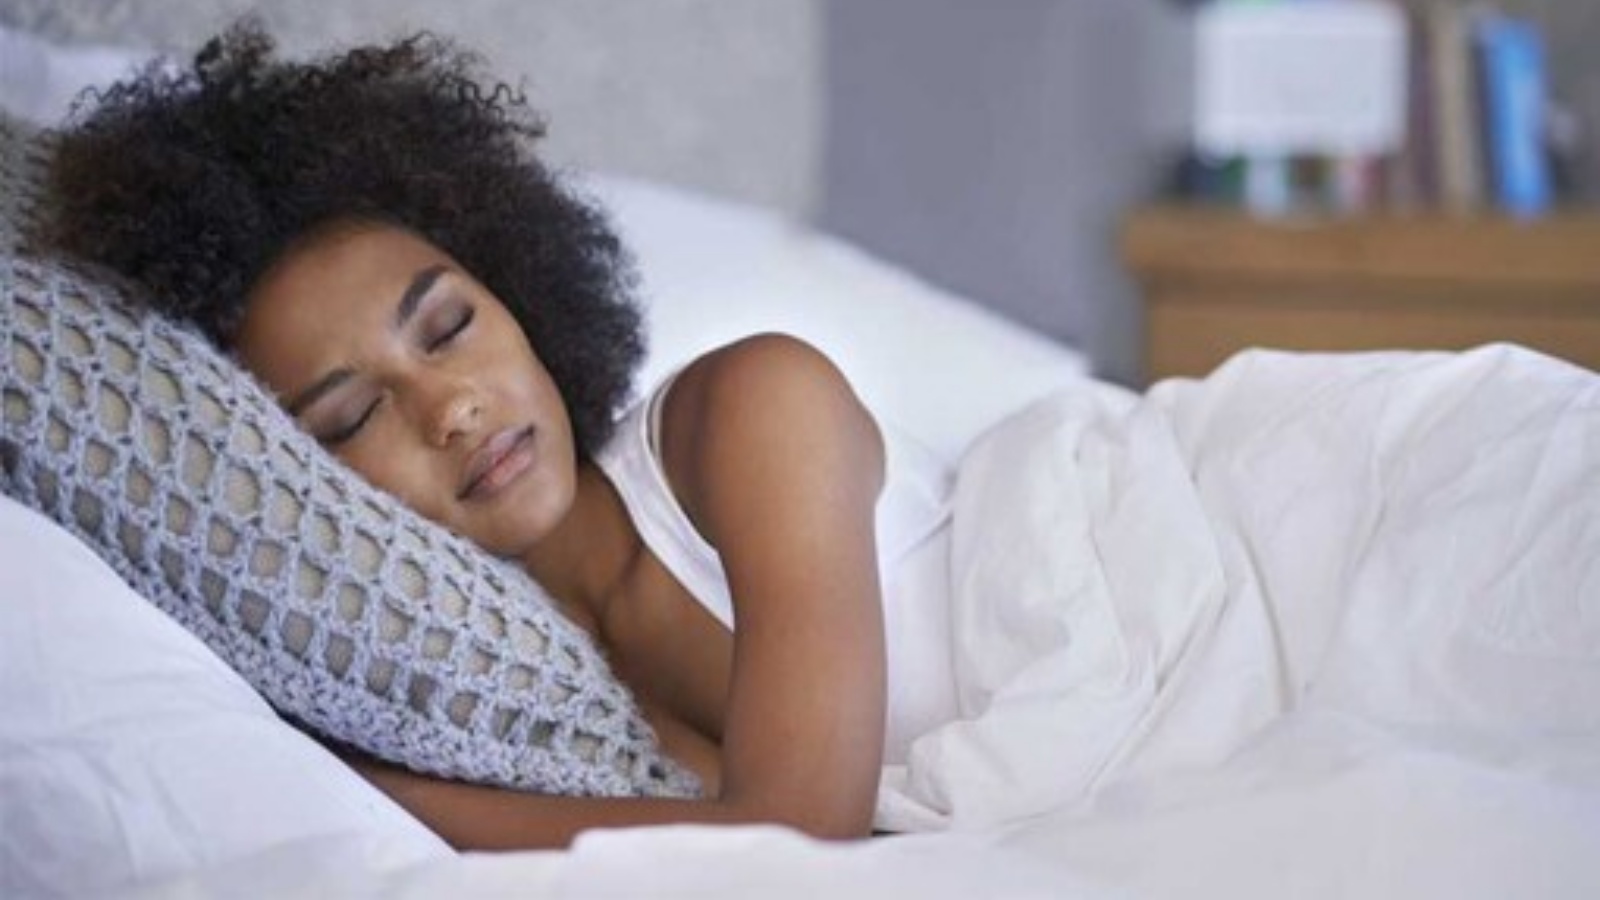 الضوء الخافت خلال النوم يمكن أن يكون له تأثيرات سلبية مضرة بصحة الدماغ